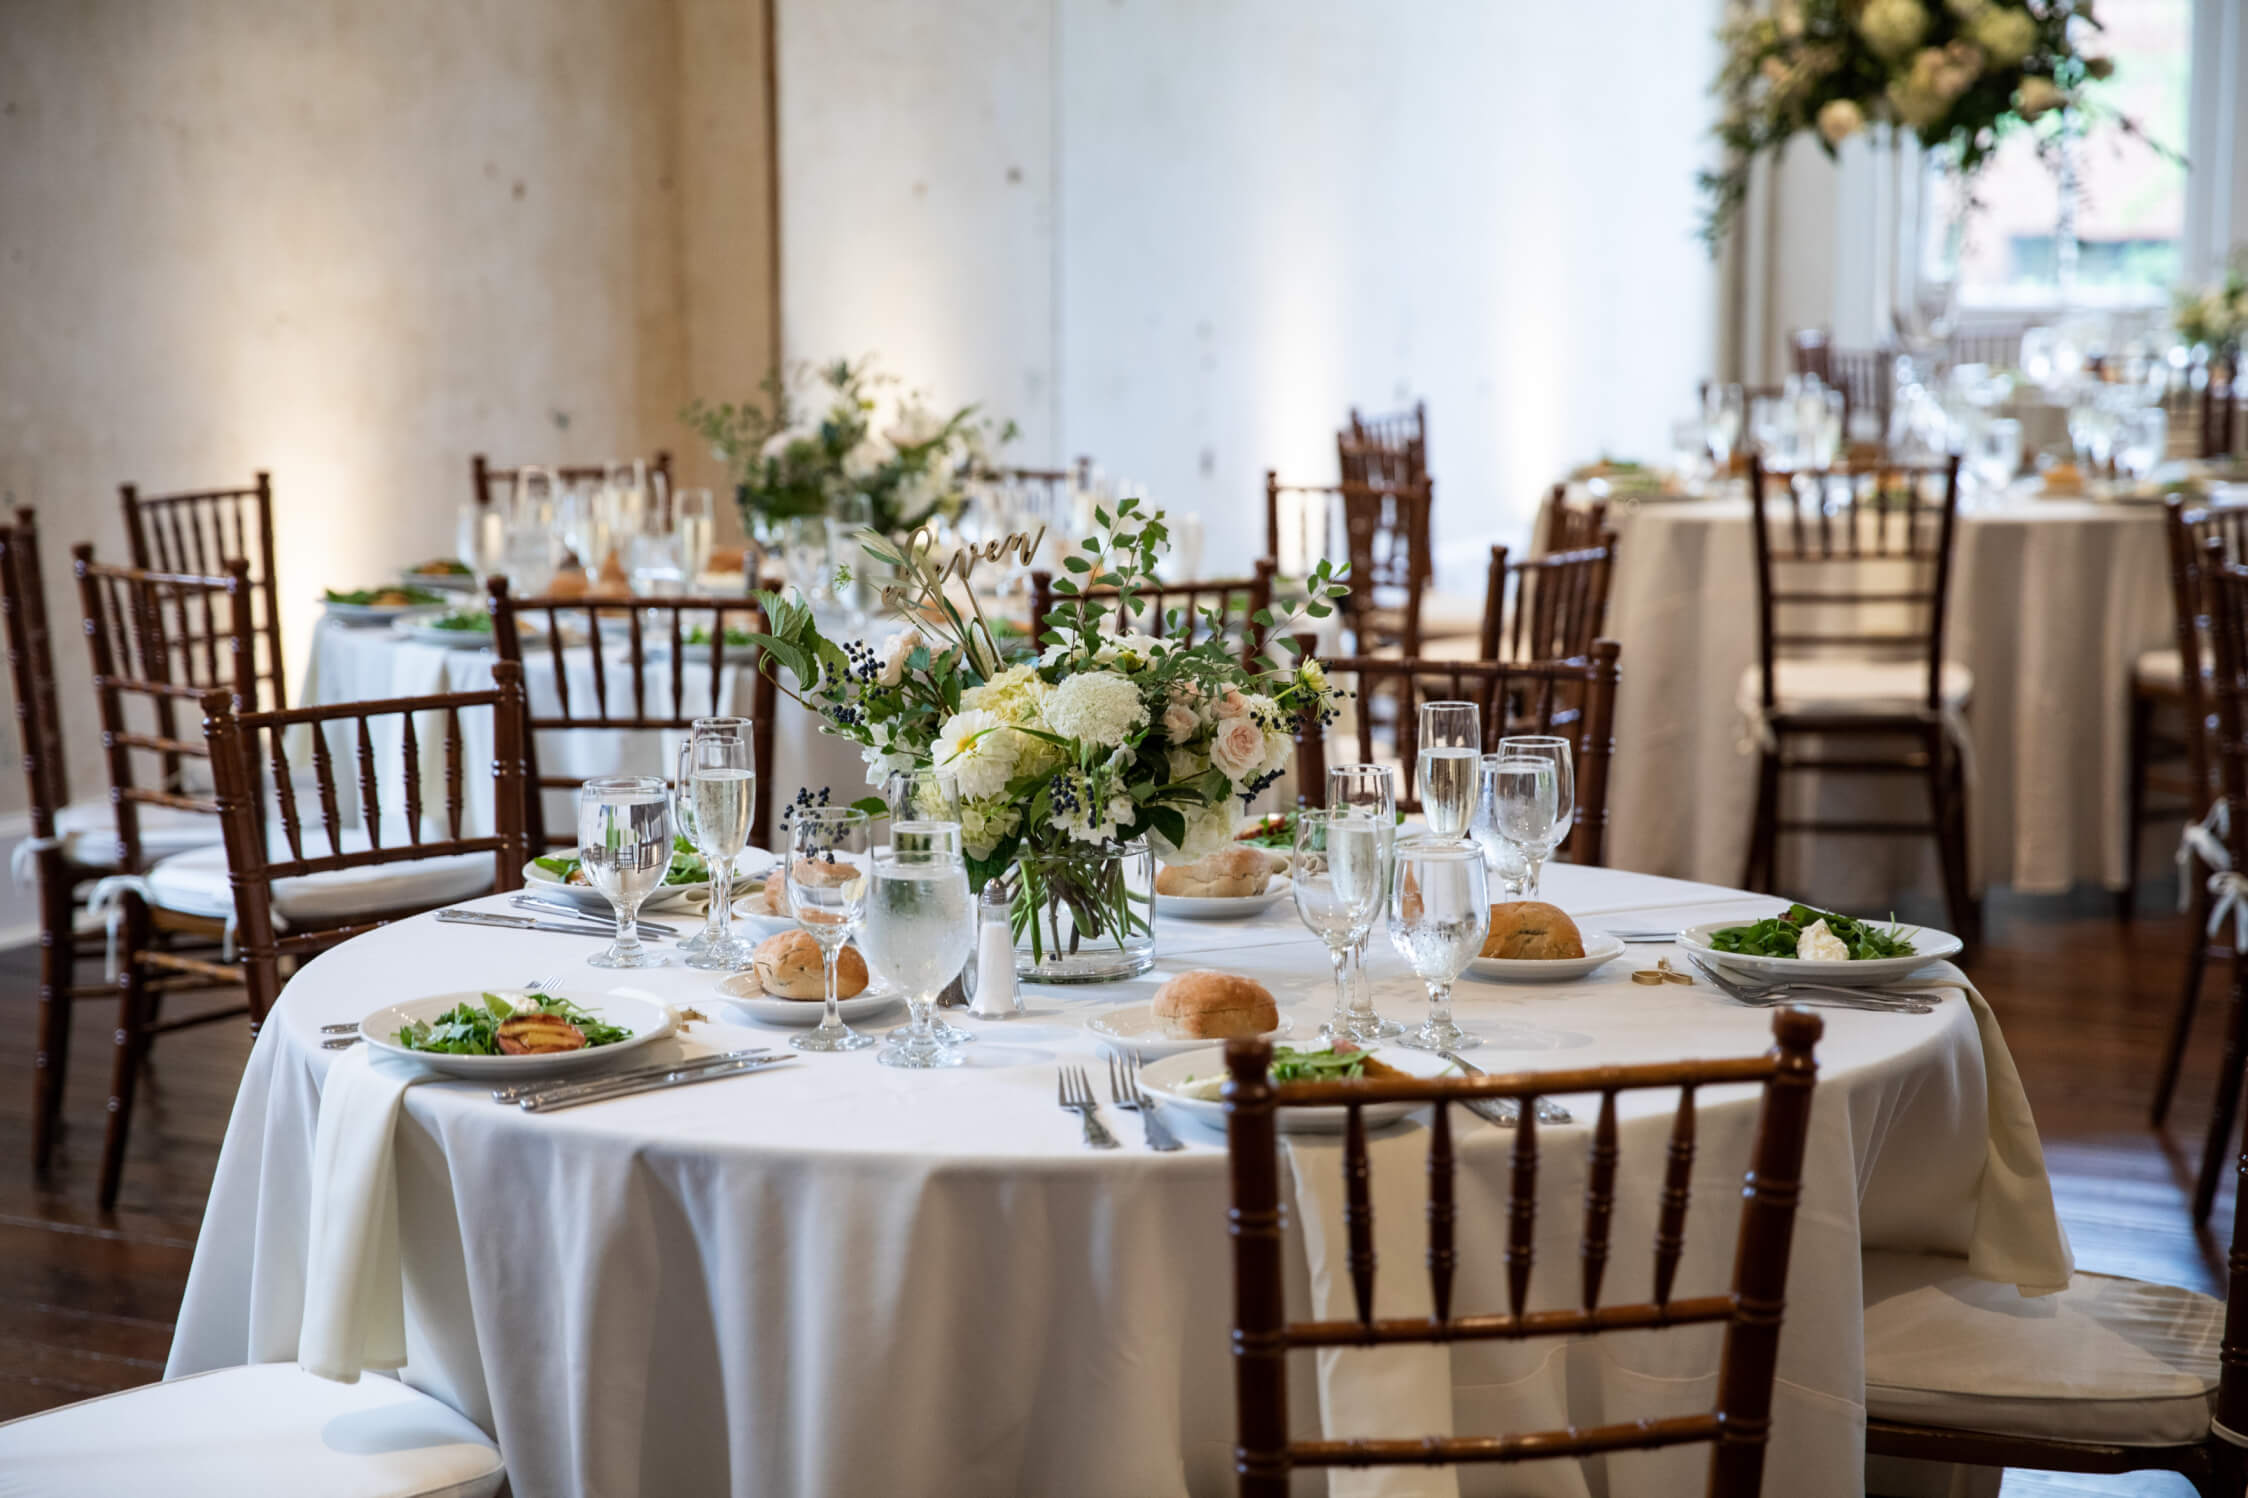 Att använda mindre runda bord skapar en trevlig känsla under bröllopsmiddagen